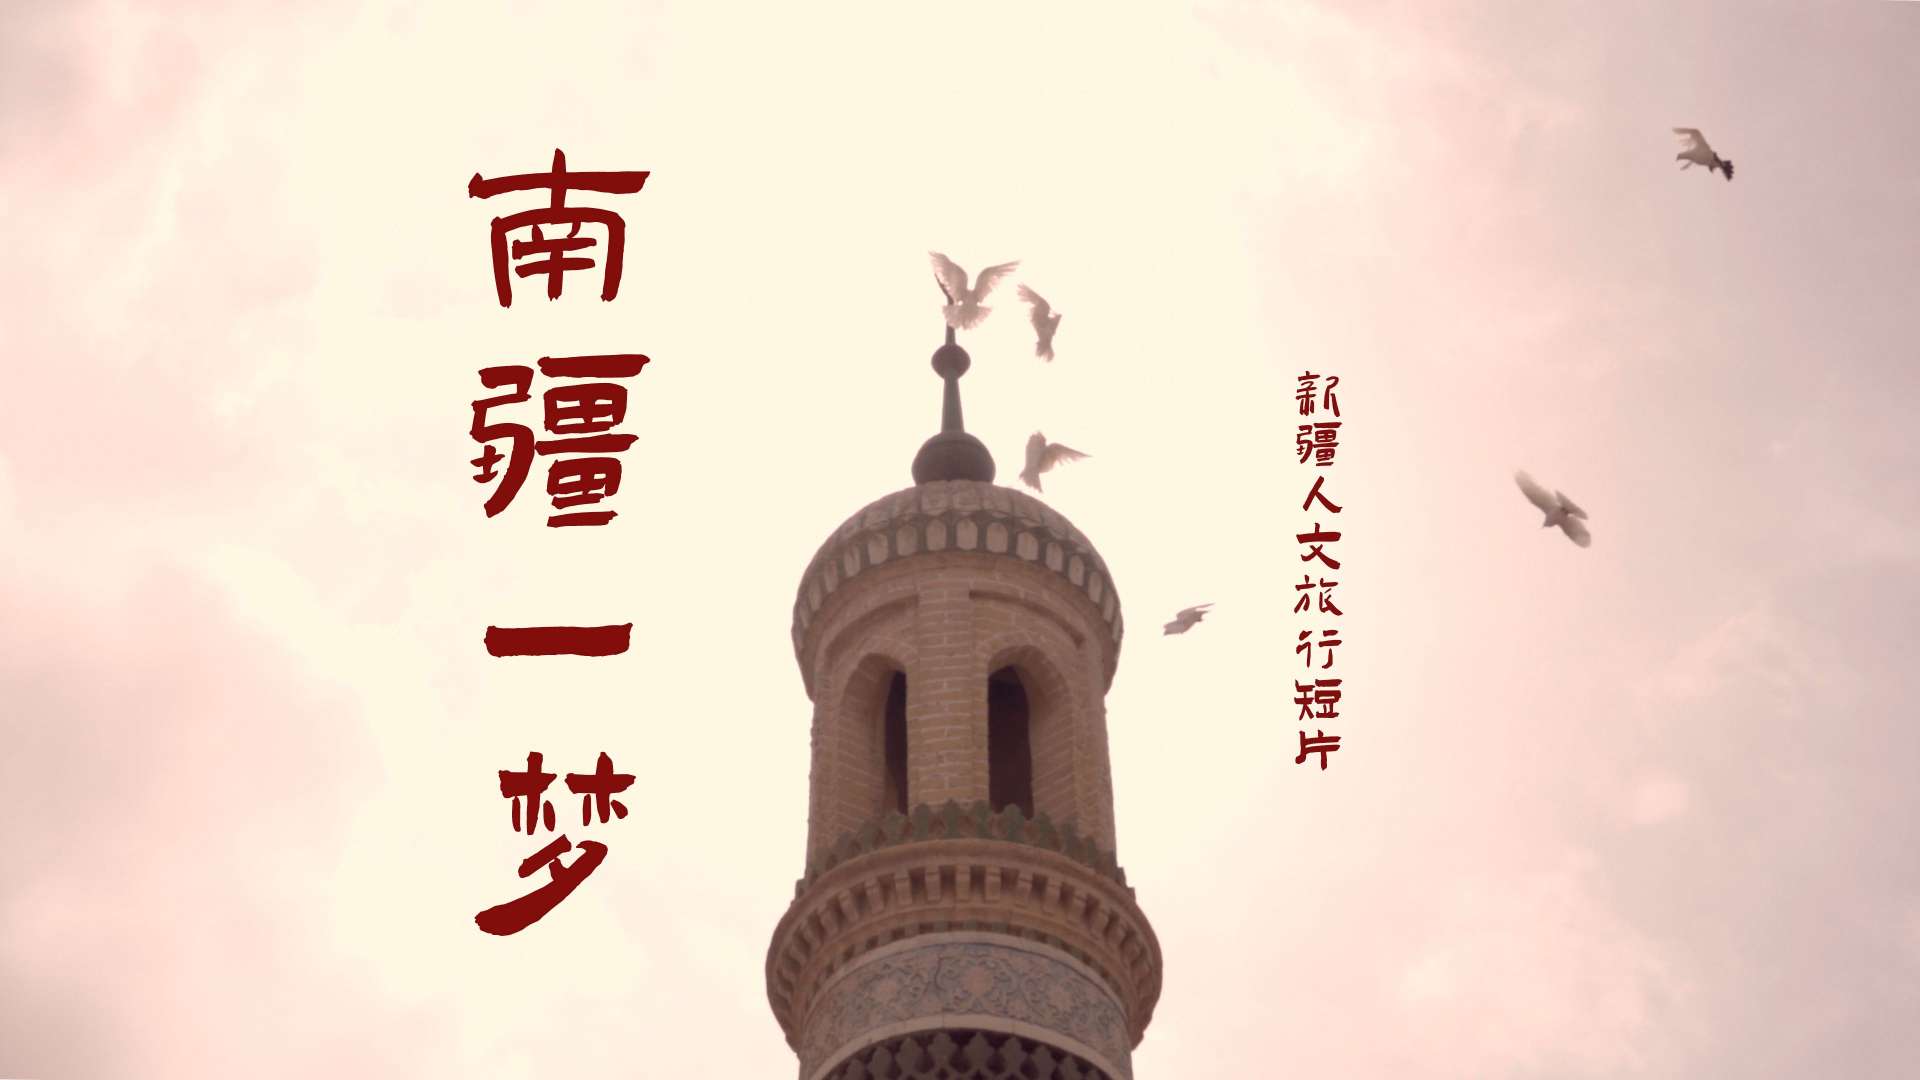 新疆人文旅行短片《南疆一梦》